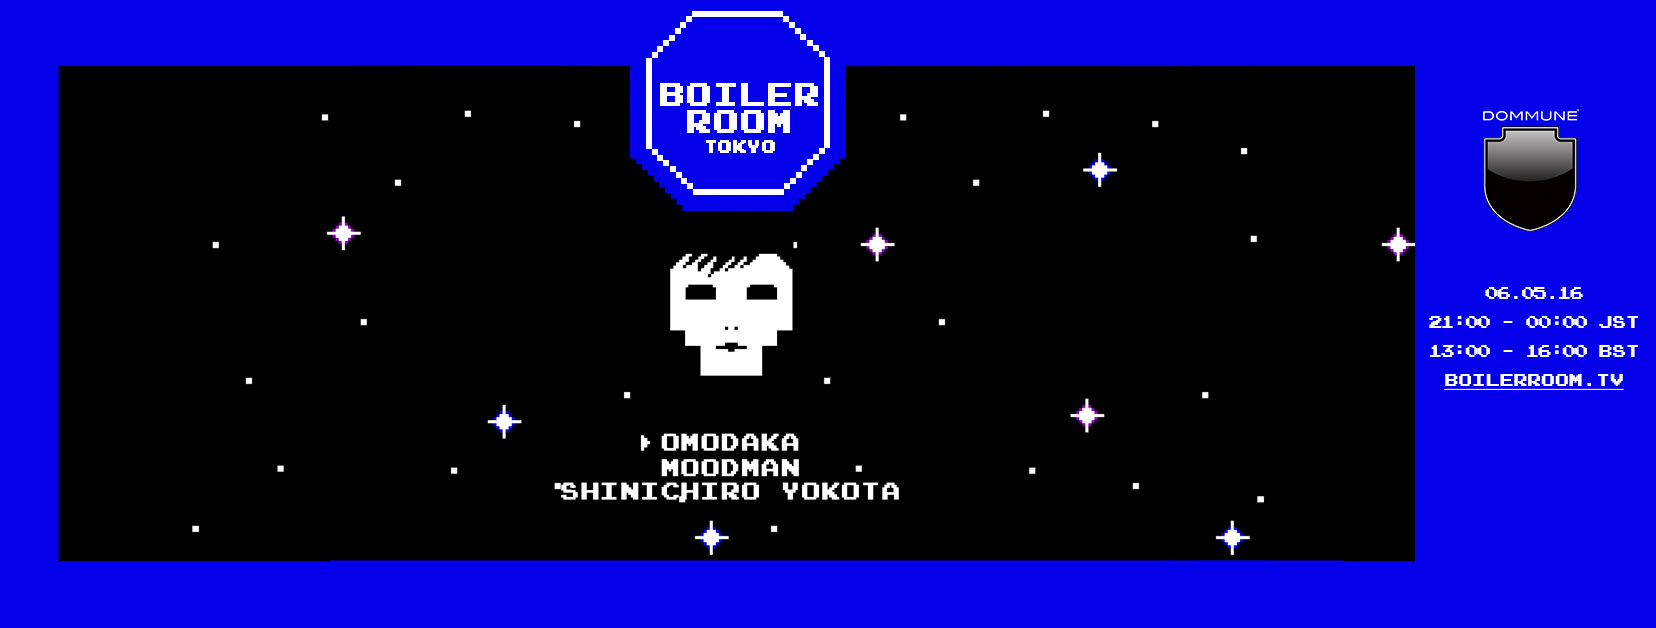 Boiler Room Tokyo OMODAKA